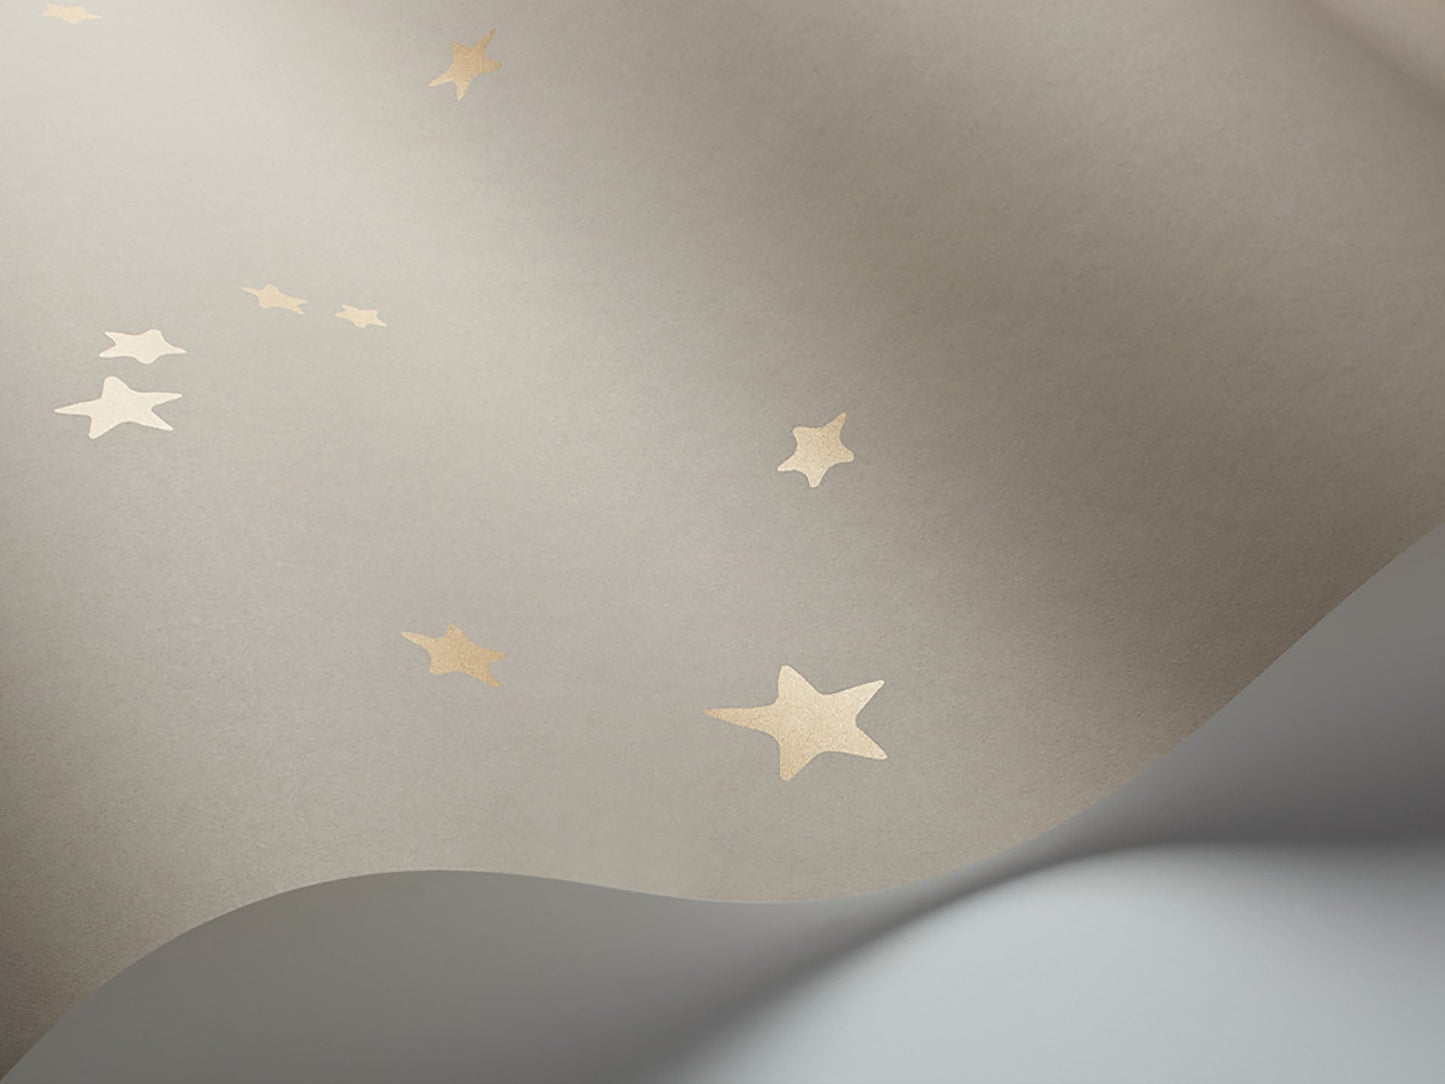 Stars - Wallpaper Trader